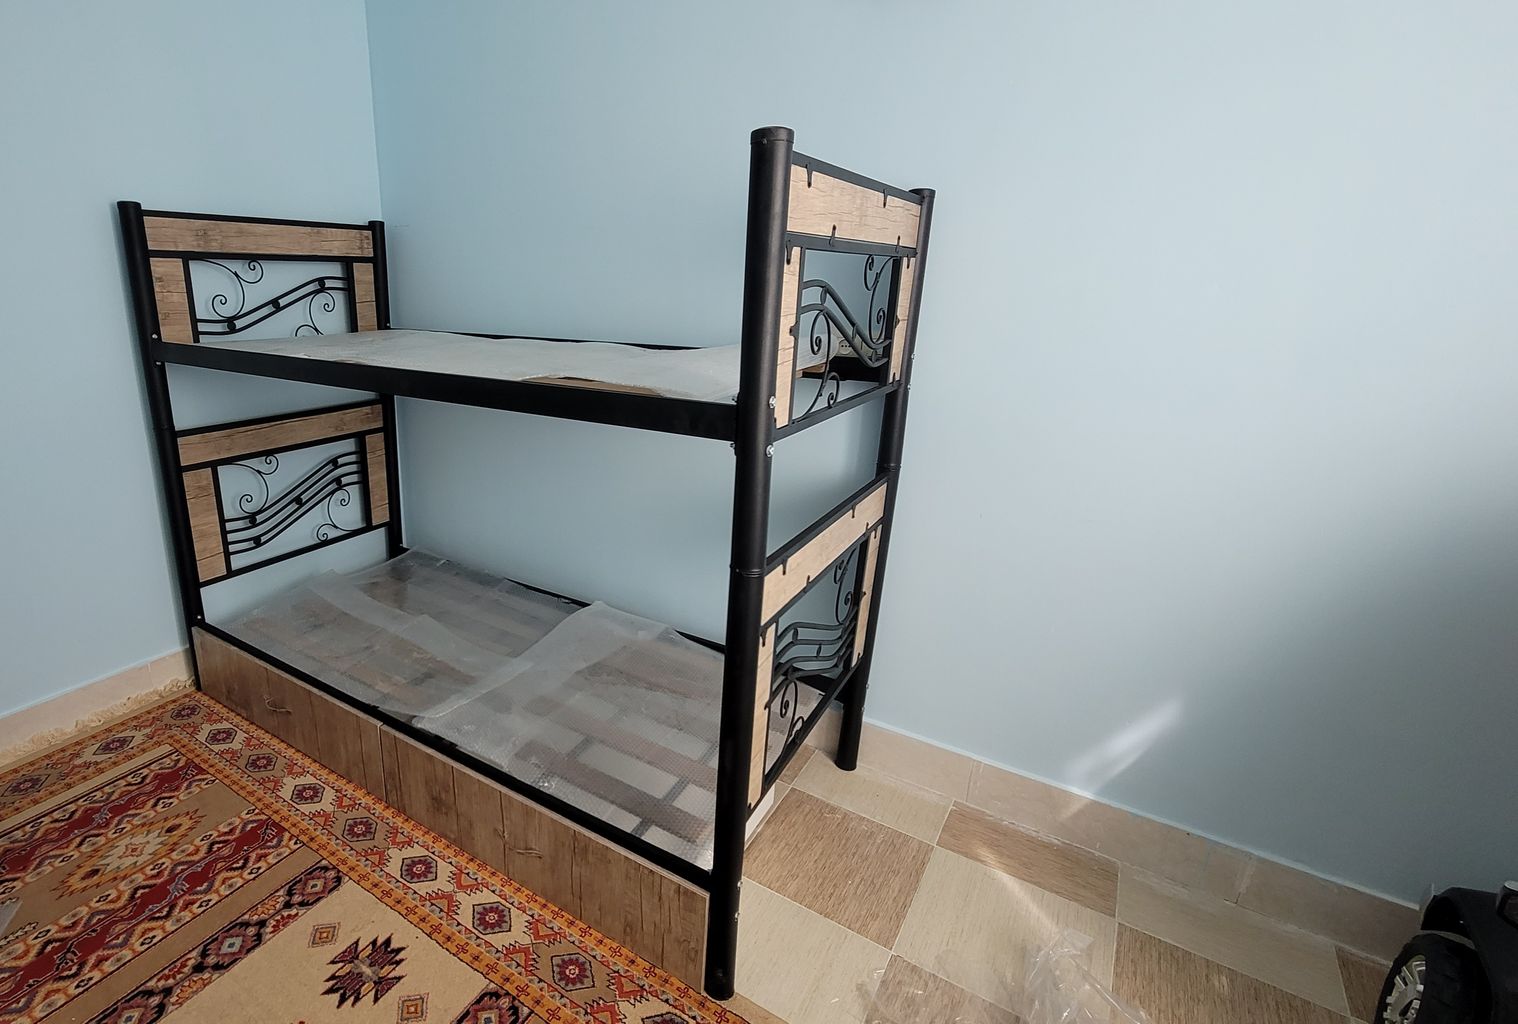 نظرات خریداران در مورد تخت خواب دو طبقه کد 898 مدل نسیم سایز 90x200 سانتیمتر+ مزایا و معایب